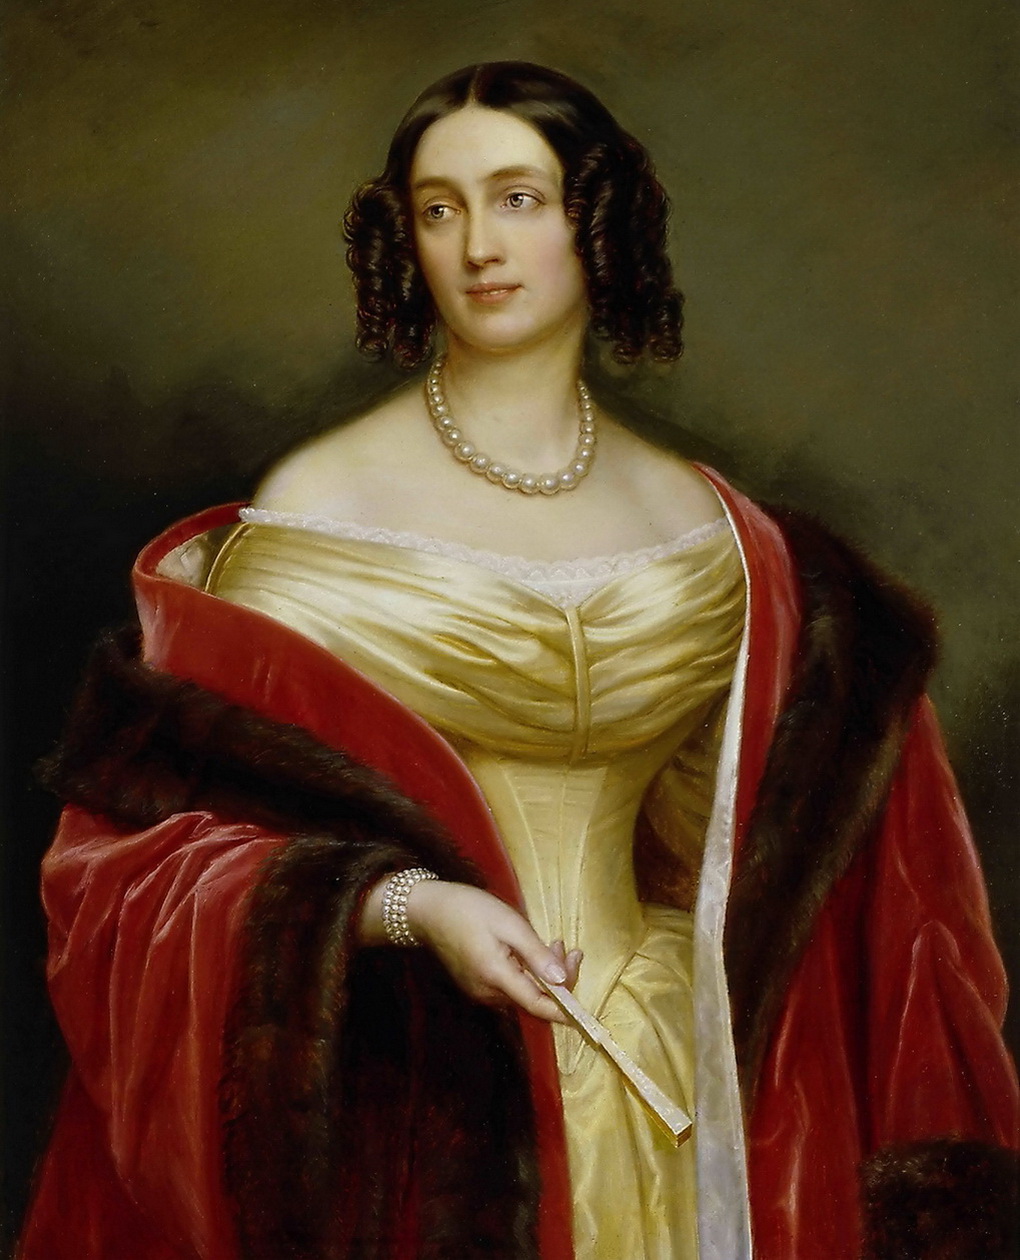 портрет Елизаветы Людовики Баварской будучи супругой Фридриха Вильгельма IV, королевой Пруссии